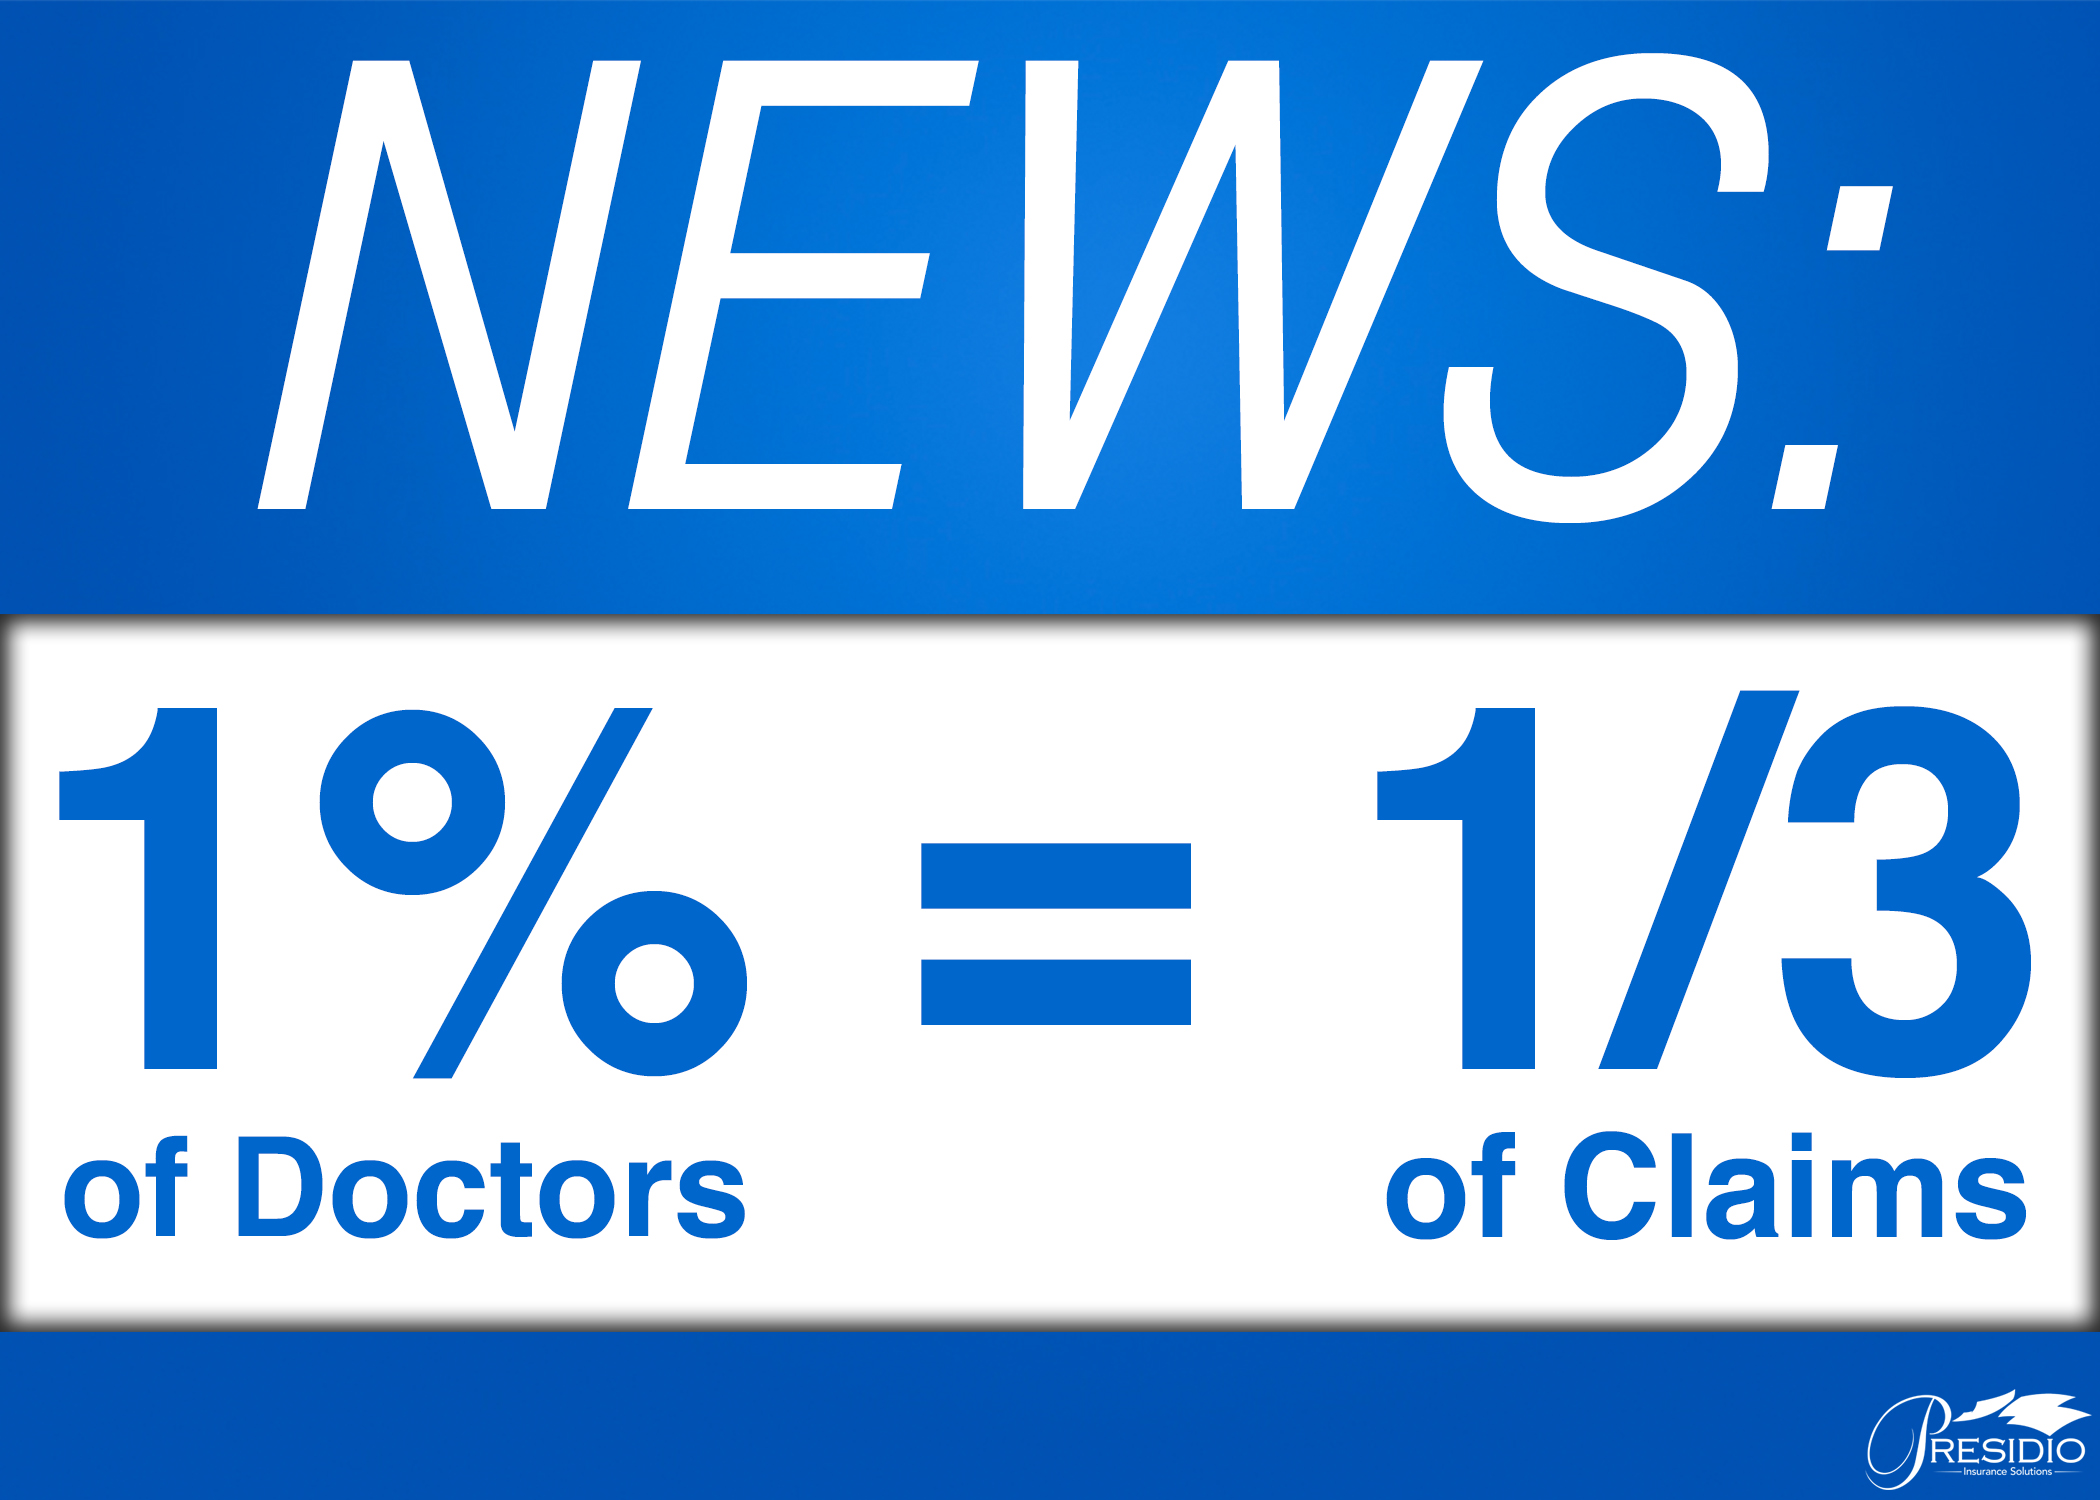 1% of Doctors